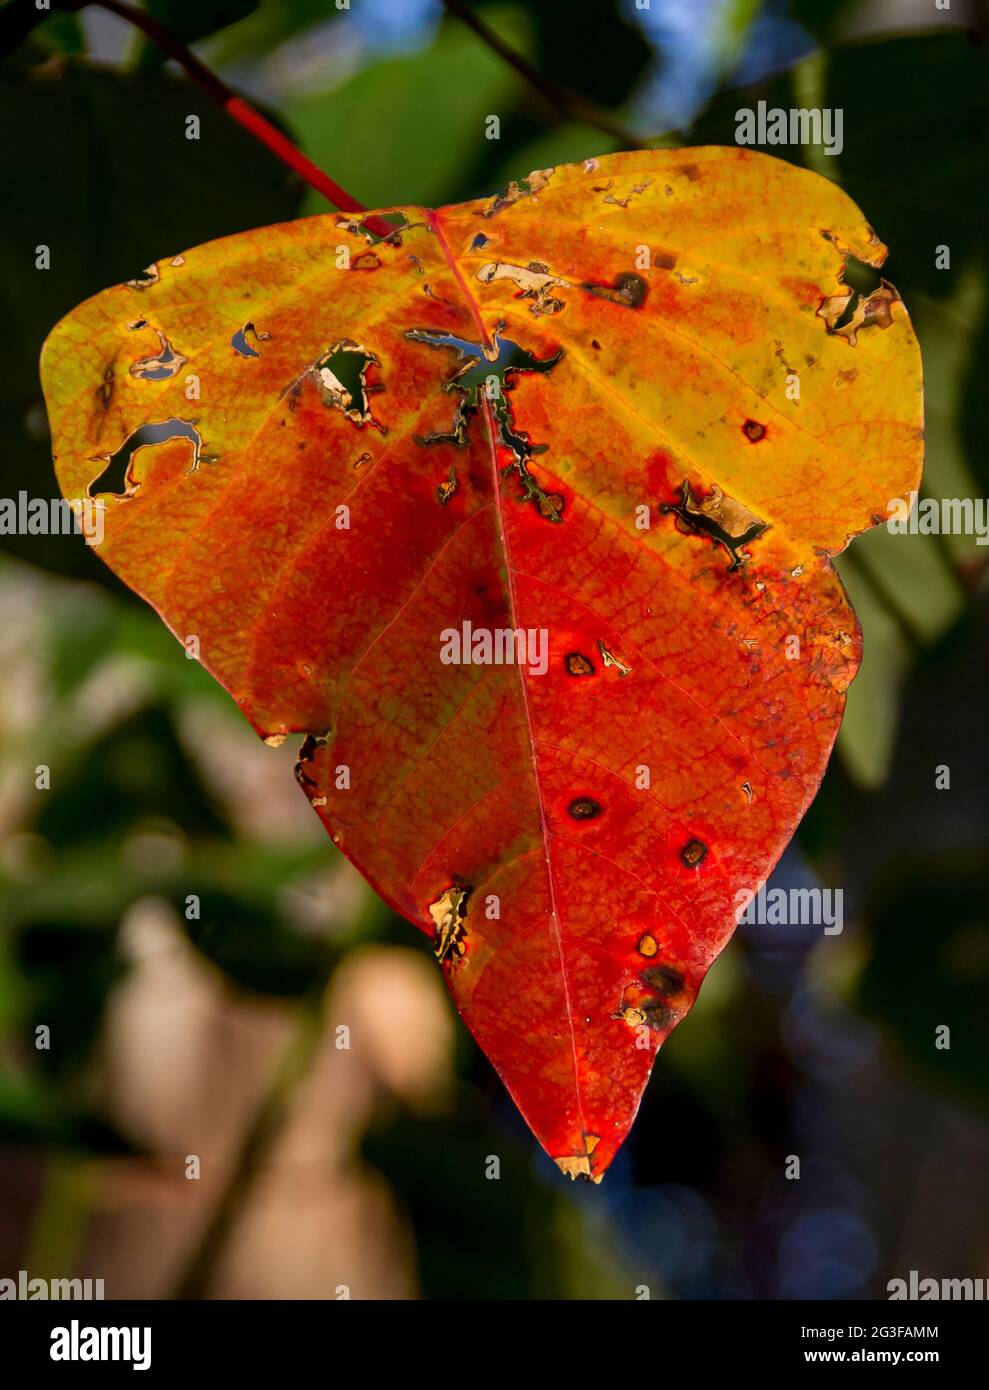 Rot-gelbes seneszierendes Blatt des blutenden Herzbaums (Homalanthus populifolius). Pionierbaumarten, subtropischer Regenwald, Queensland, Australien. Stockfoto